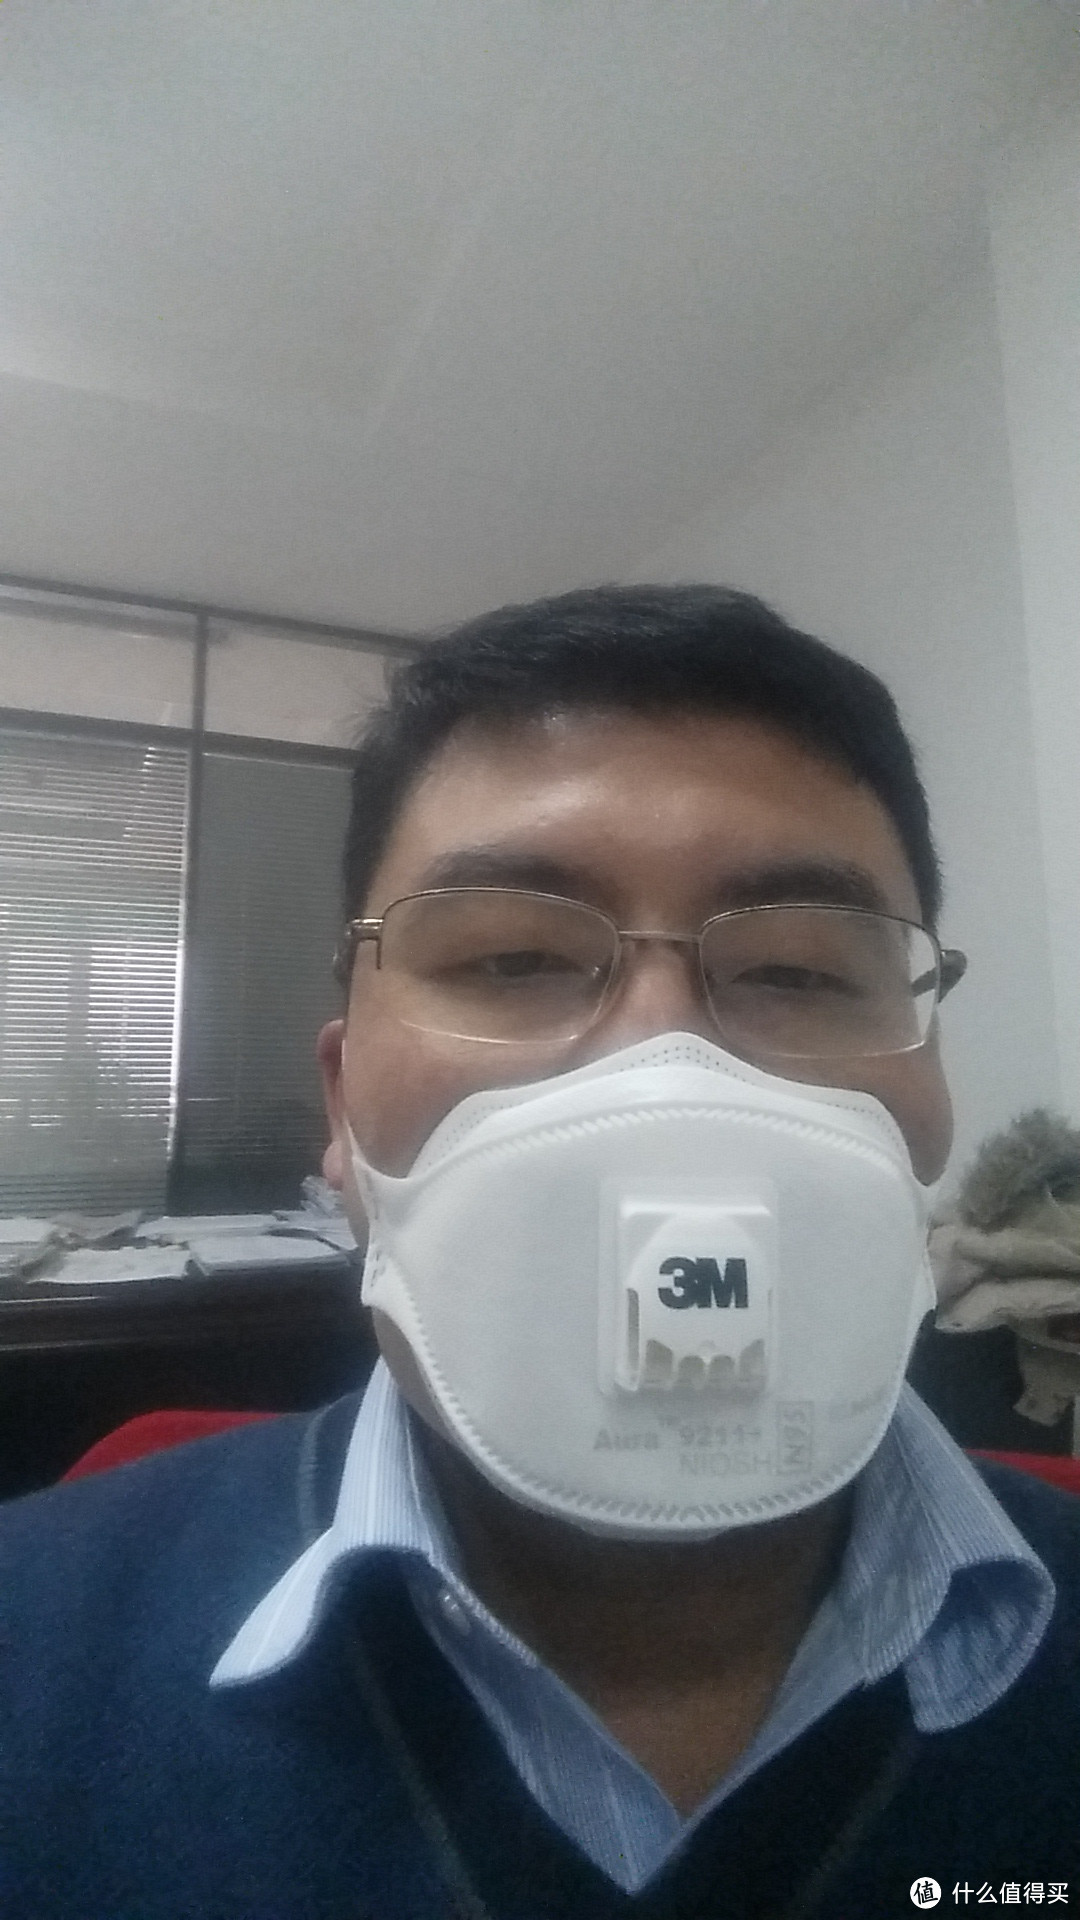 懒癌晚期患者不能再等了：海淘 3M Particulate Respirator 口罩